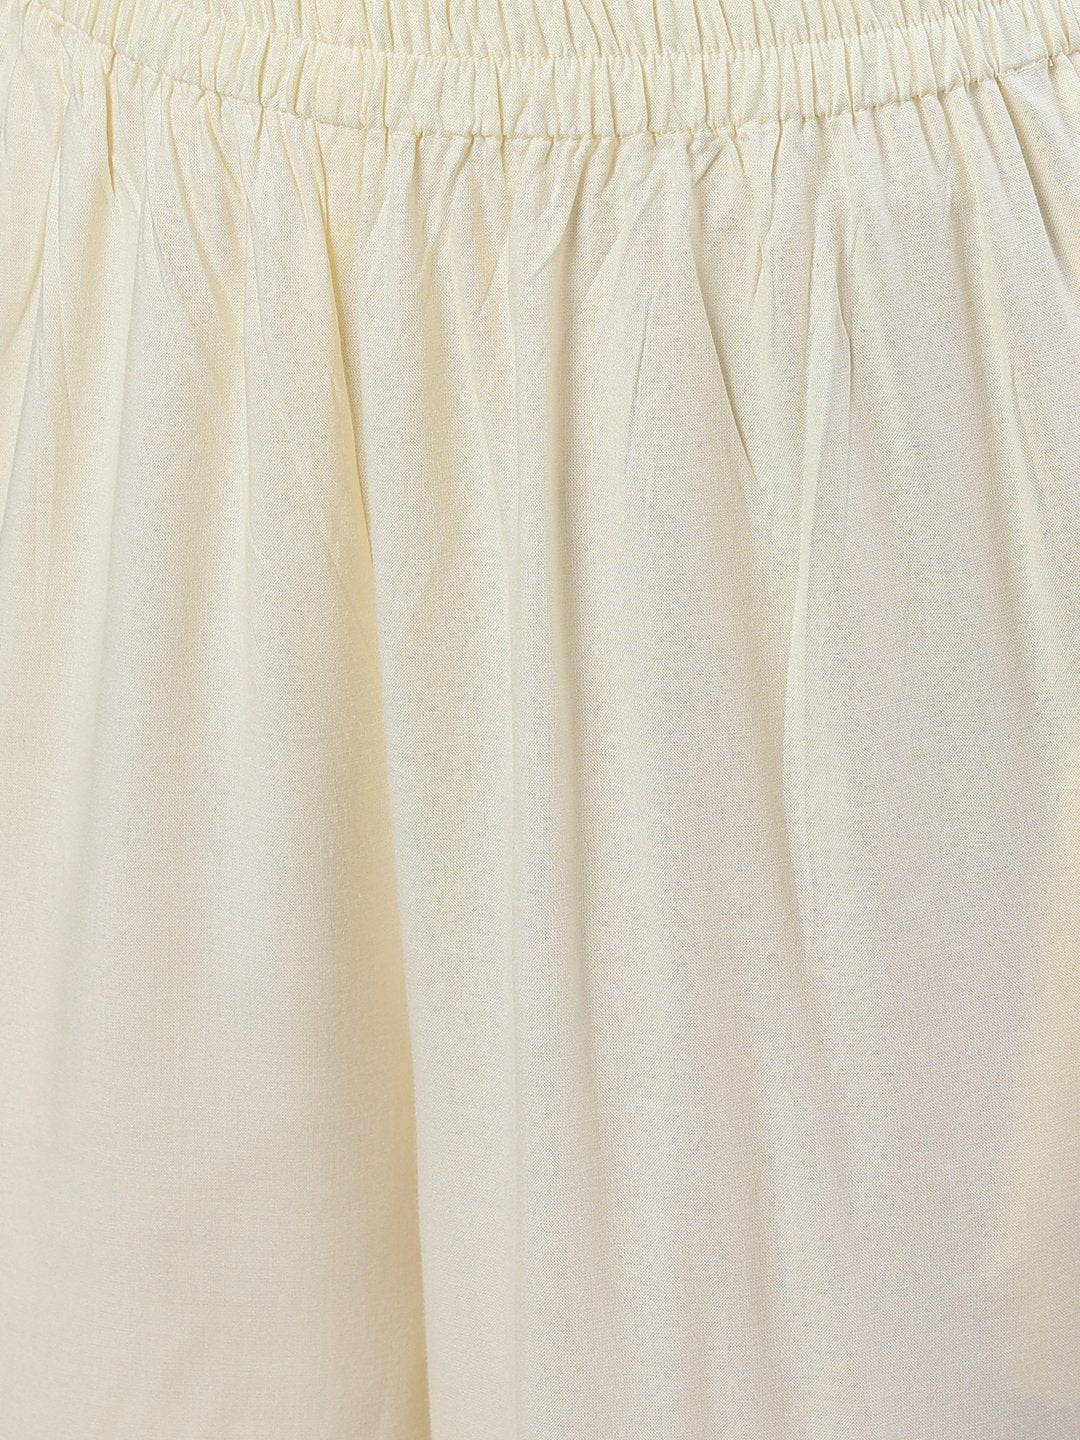 Women's Cream Three-Quarter Sleeves Straight Kurta Palazzo With Dupatta - Nayo Clothing